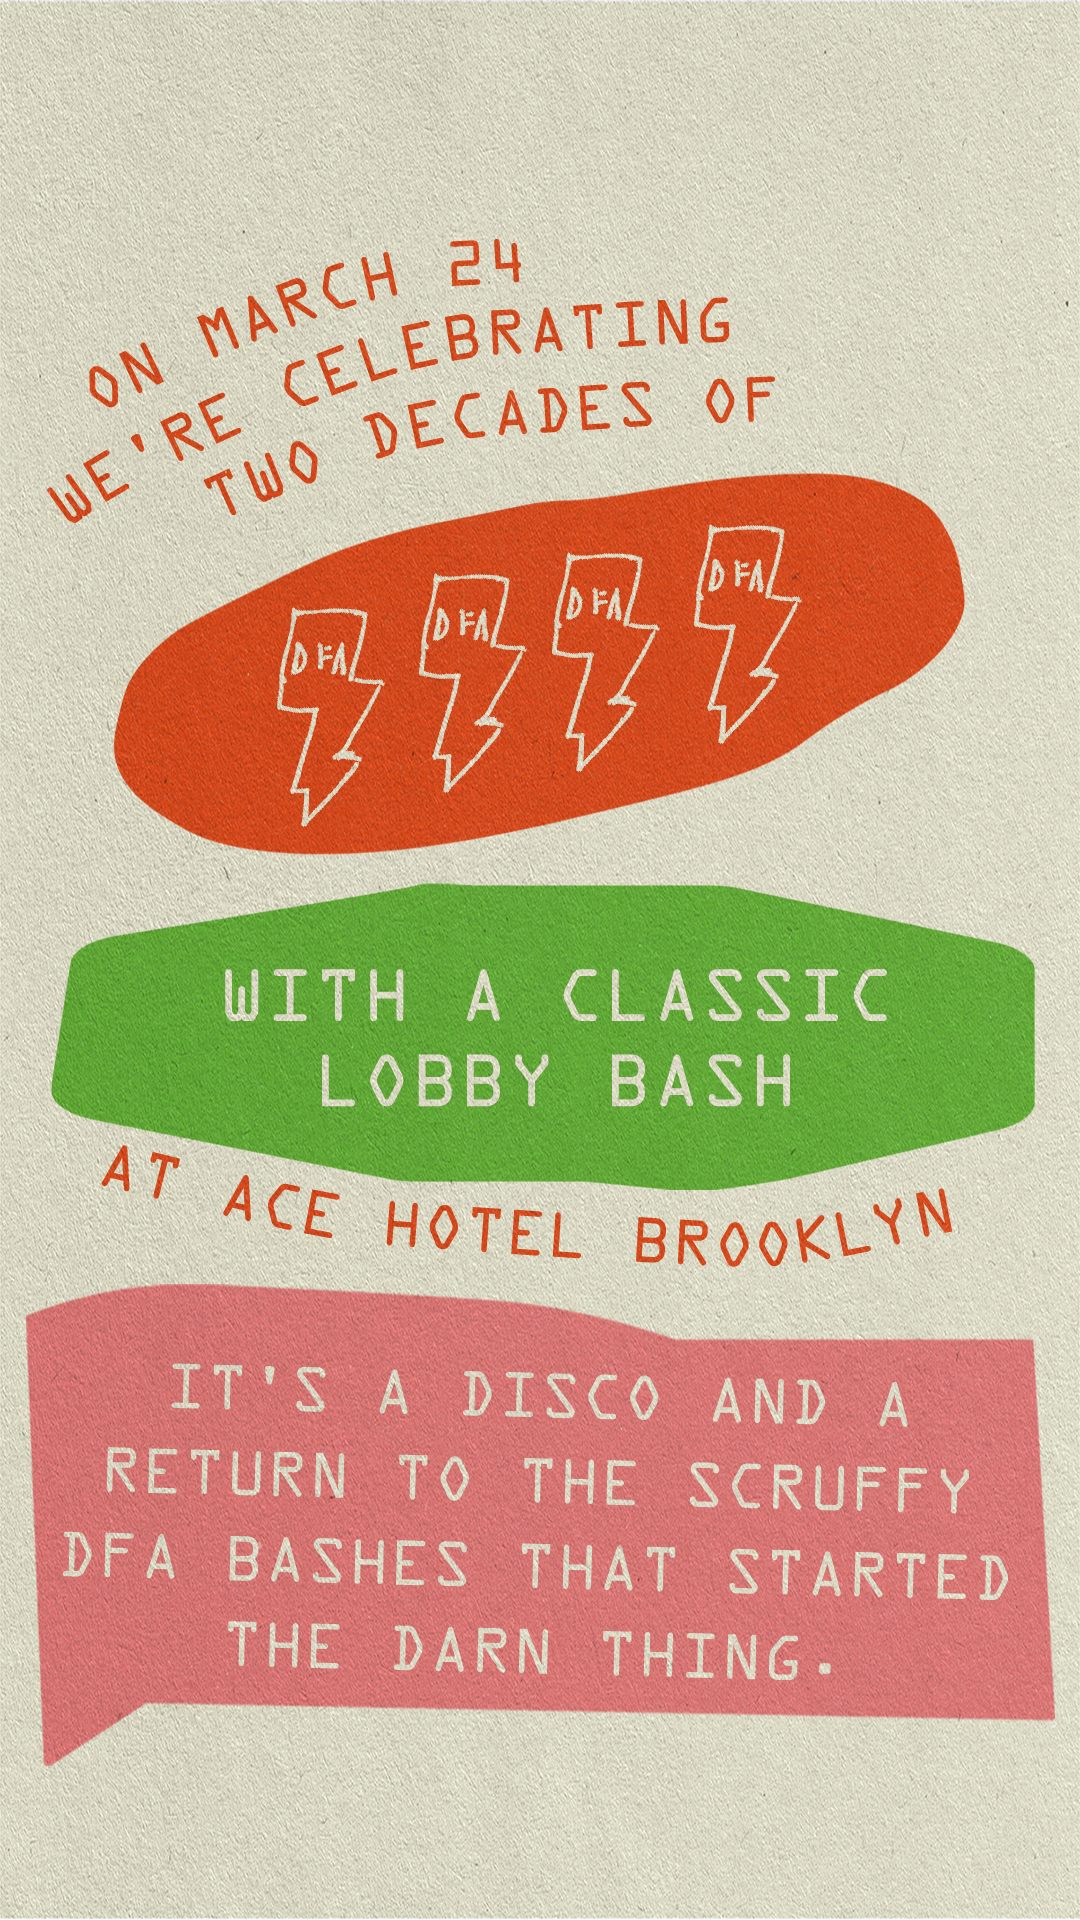 Lobby Bash event flyer